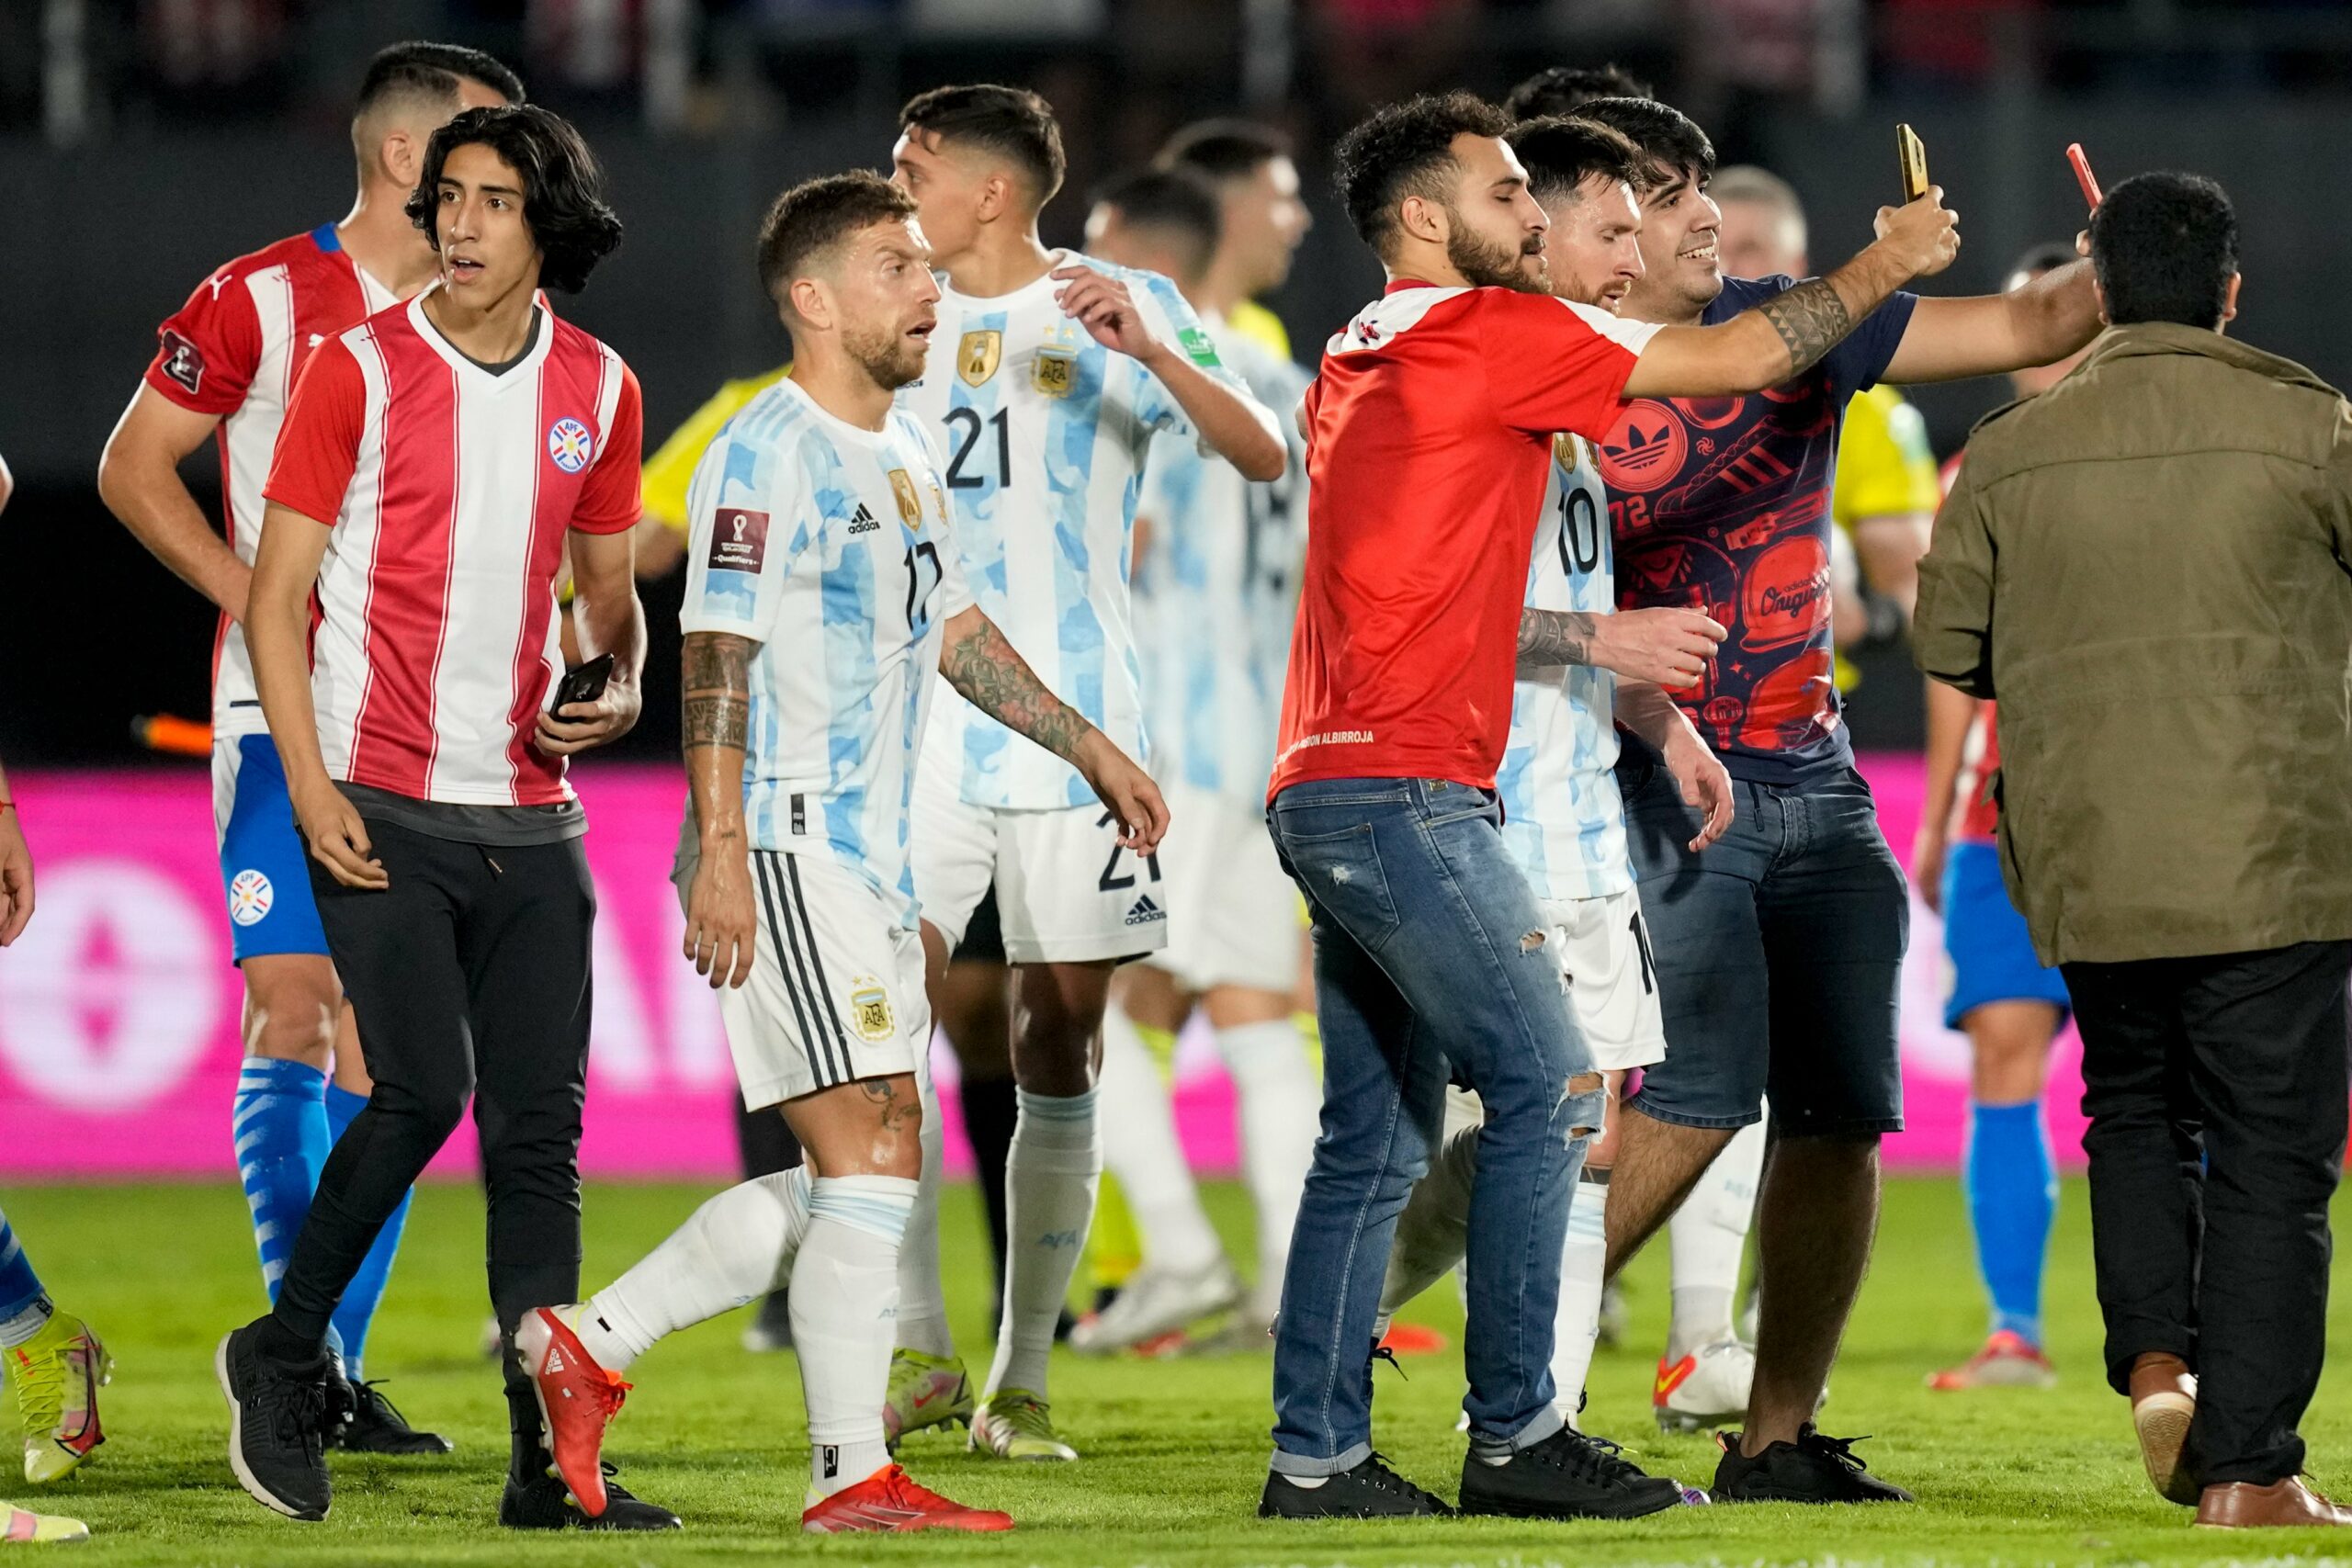 Paraguay – Argentine, les images de l’envahissement du terrain, provoqué par Lionel Messi